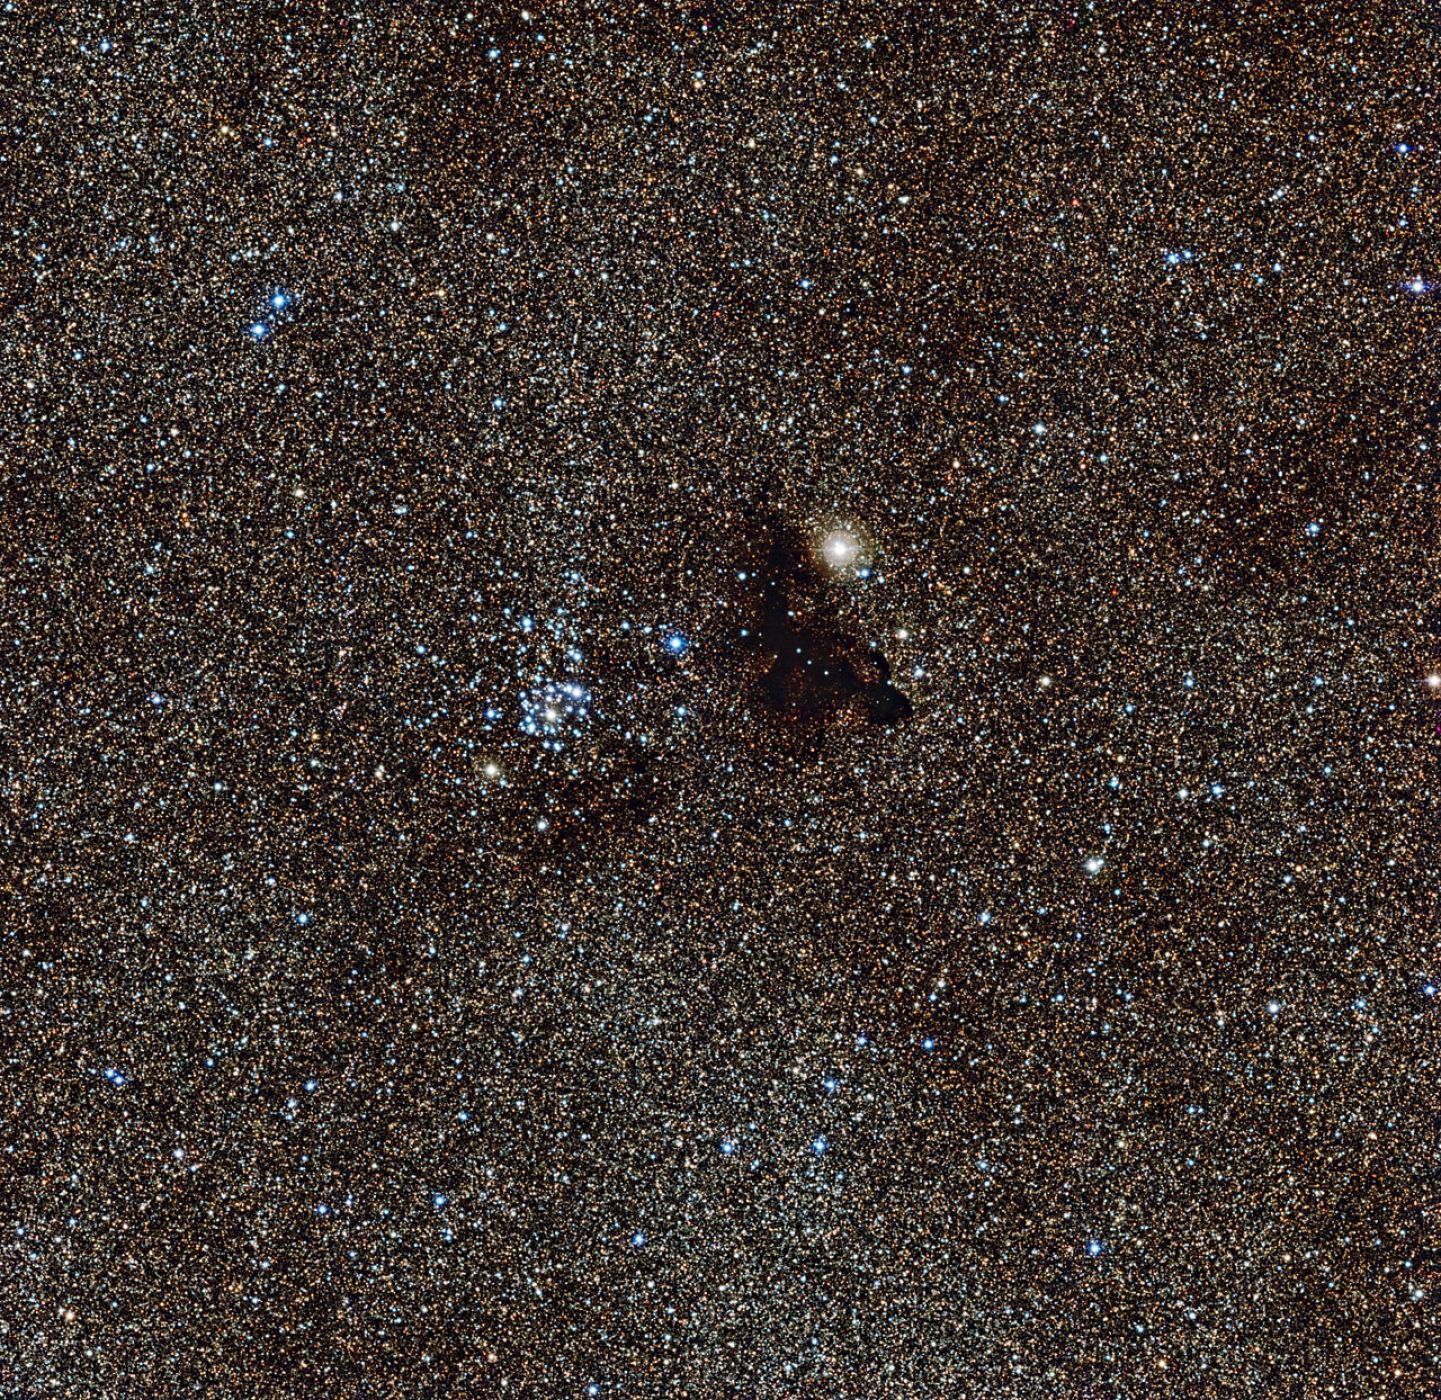 La nube oscura Barnard 86 fotografiada por el Observatorio Austral Europeo.